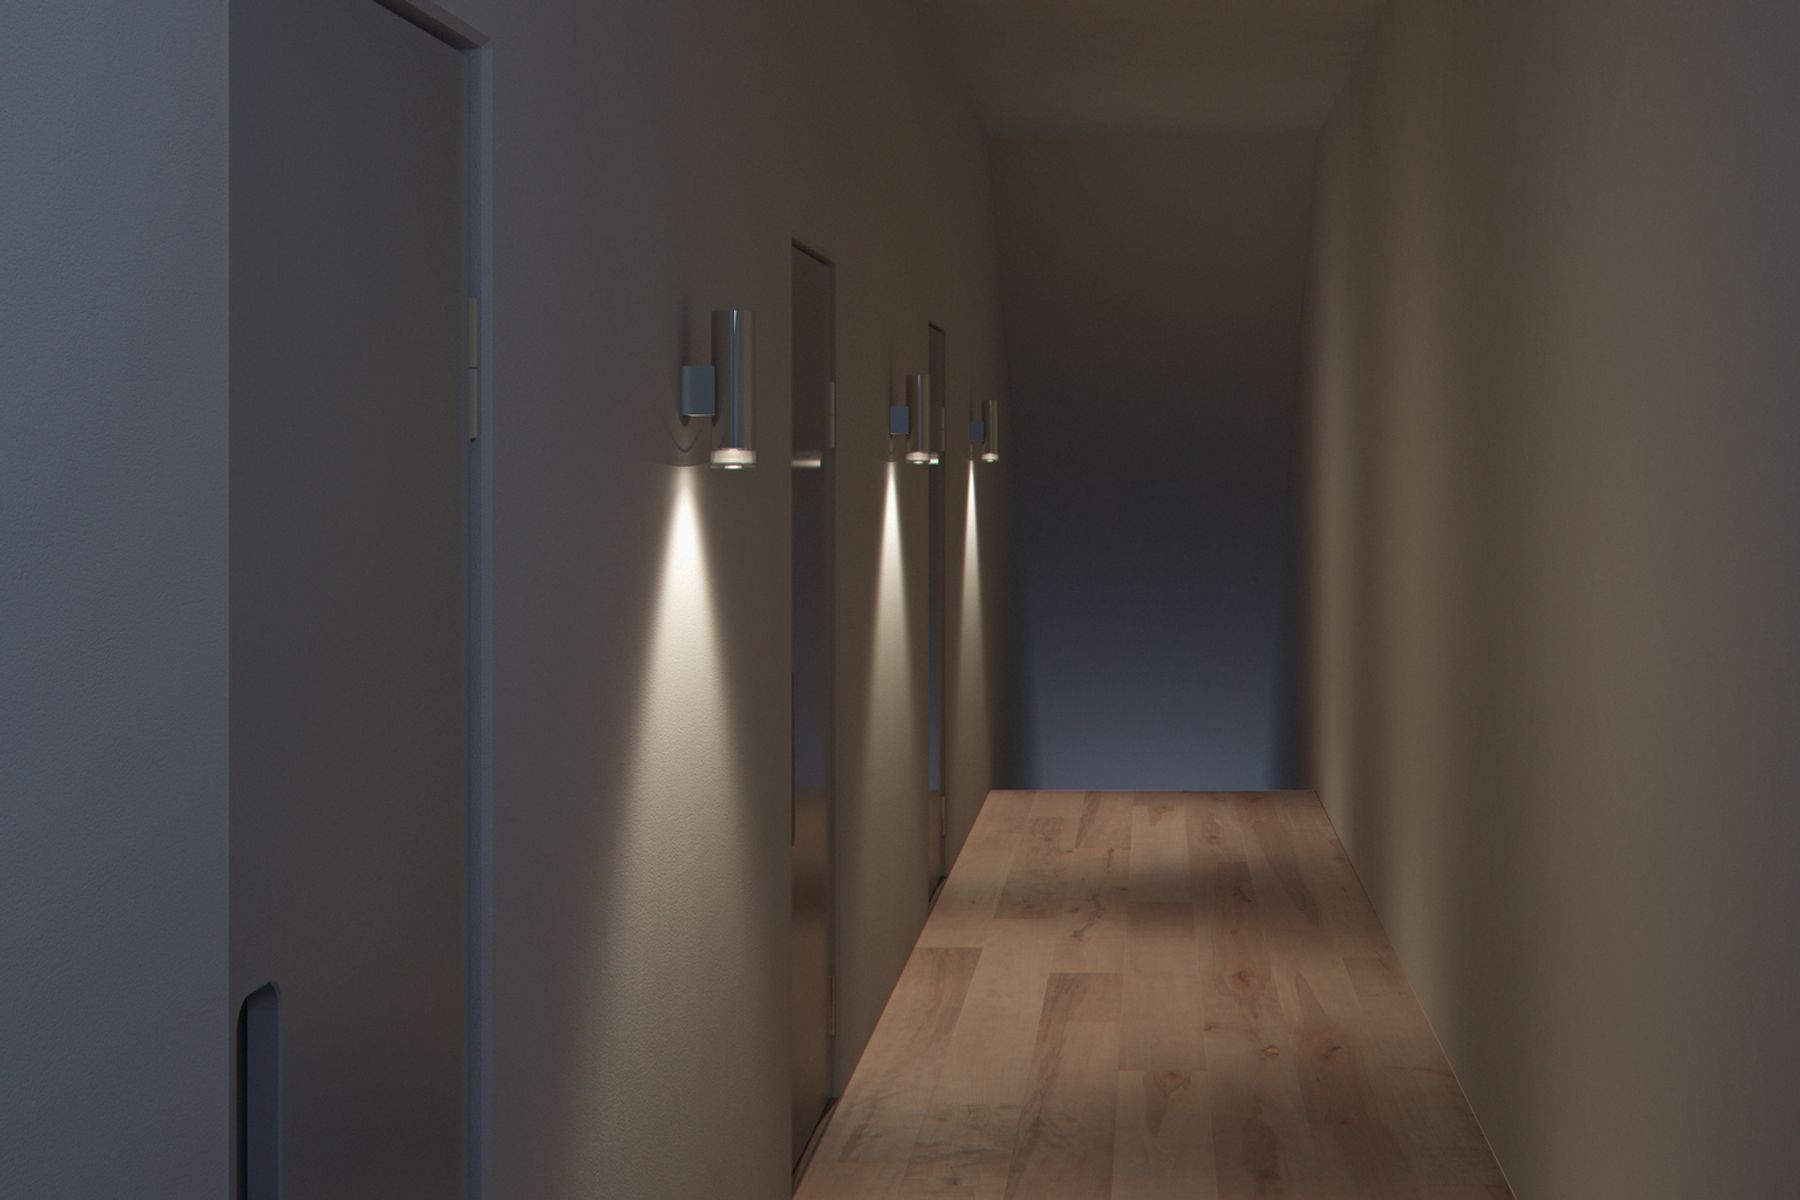 Las luminarias de pared Starpoint estructuran superficies verticales y enriquecen cualquier arquitectura mediante su refinado diseño de producto, así como el anillo translúcido para crear un efecto luminoso mágico.